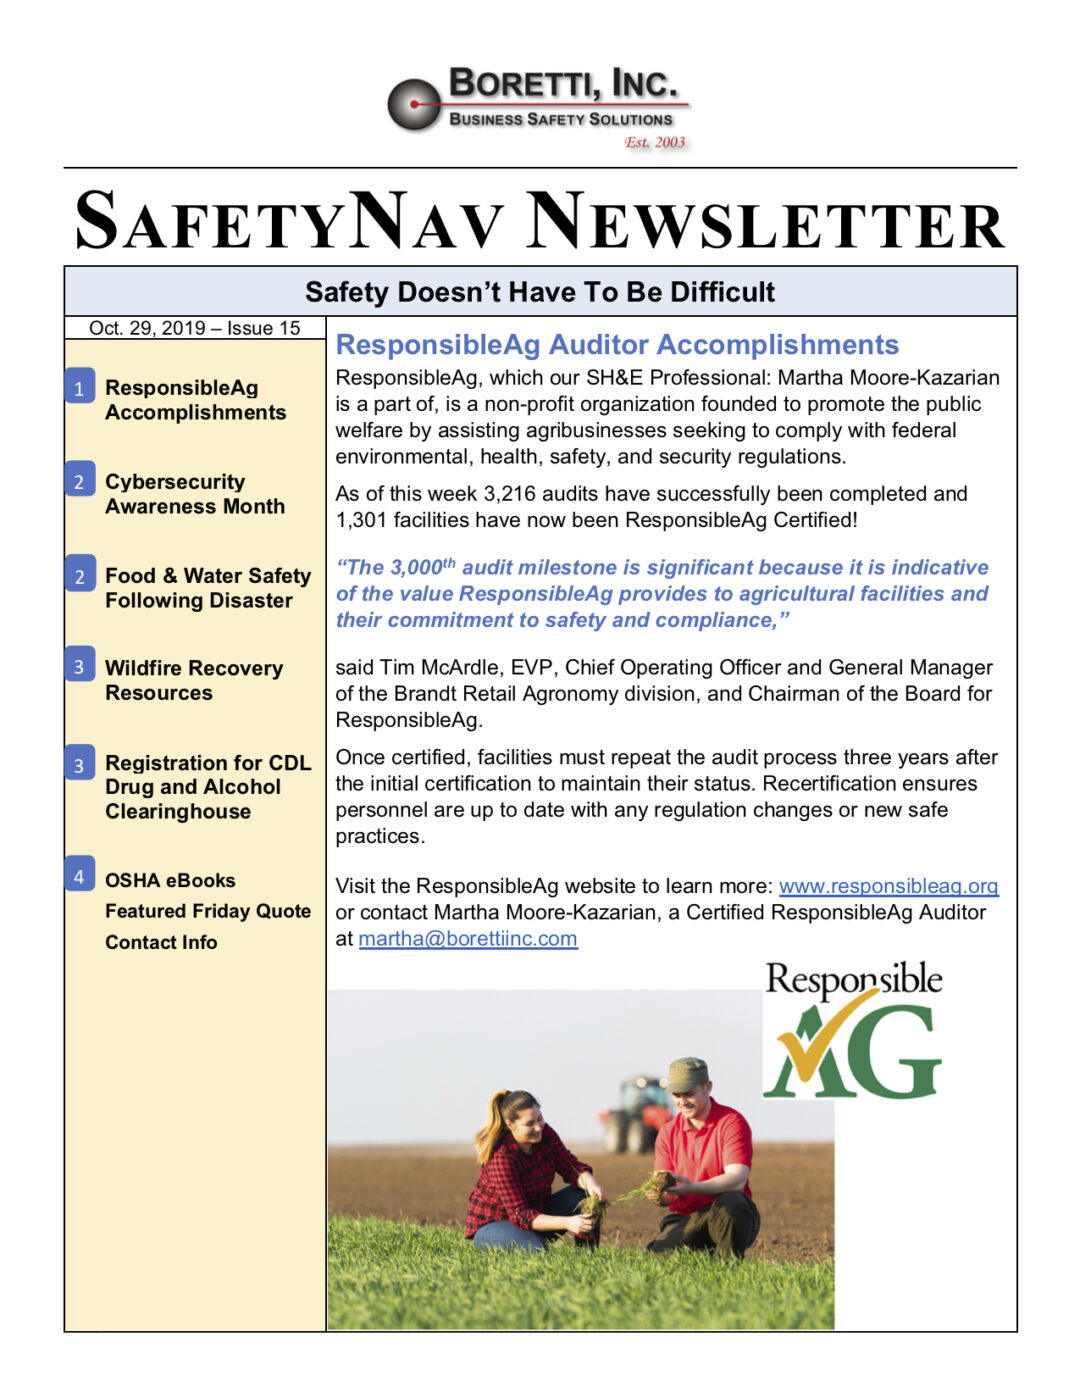 SafetyNav Newsletter #15